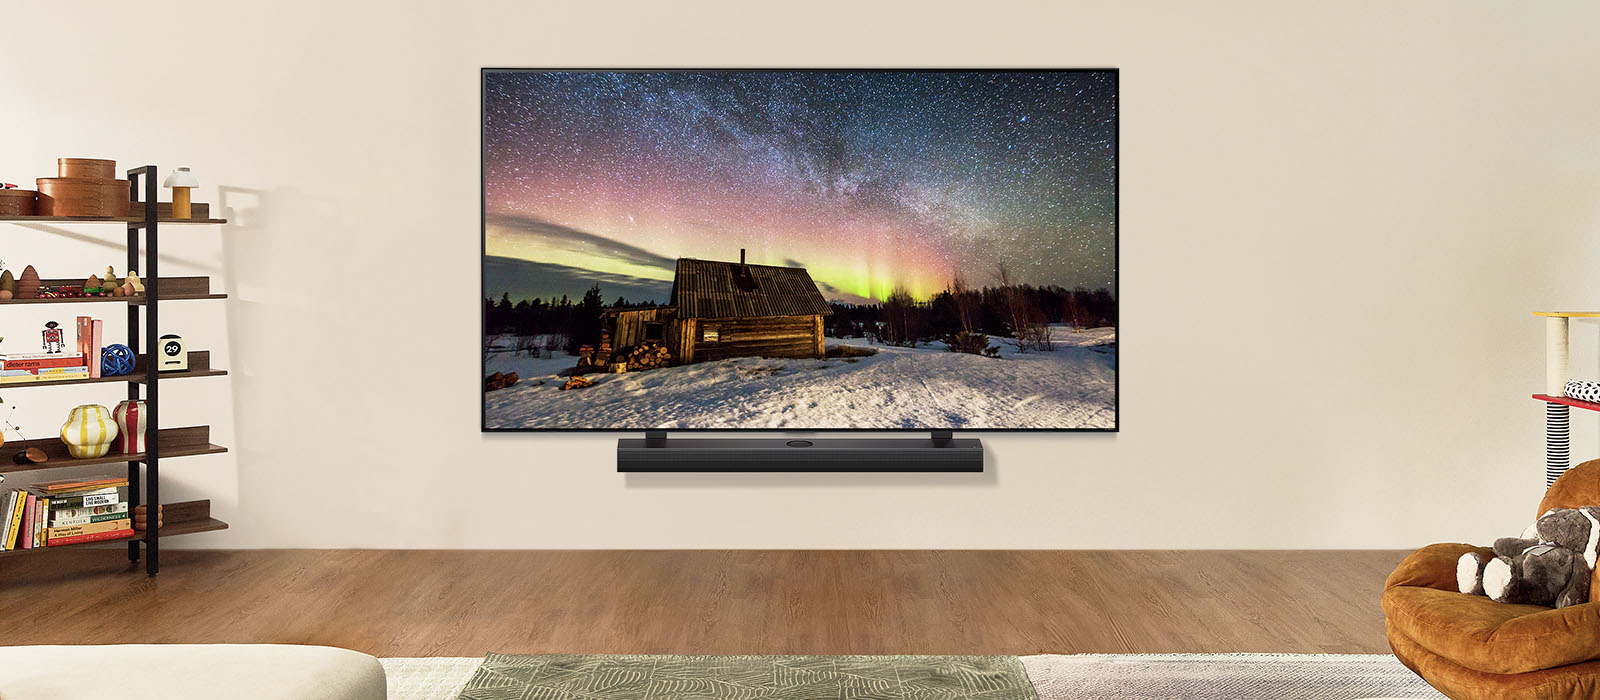 LG TV и LG Soundbar в съвременен дом през деня. На екрана се показва изображението на полярното сияние с идеалното ниво на яркост.